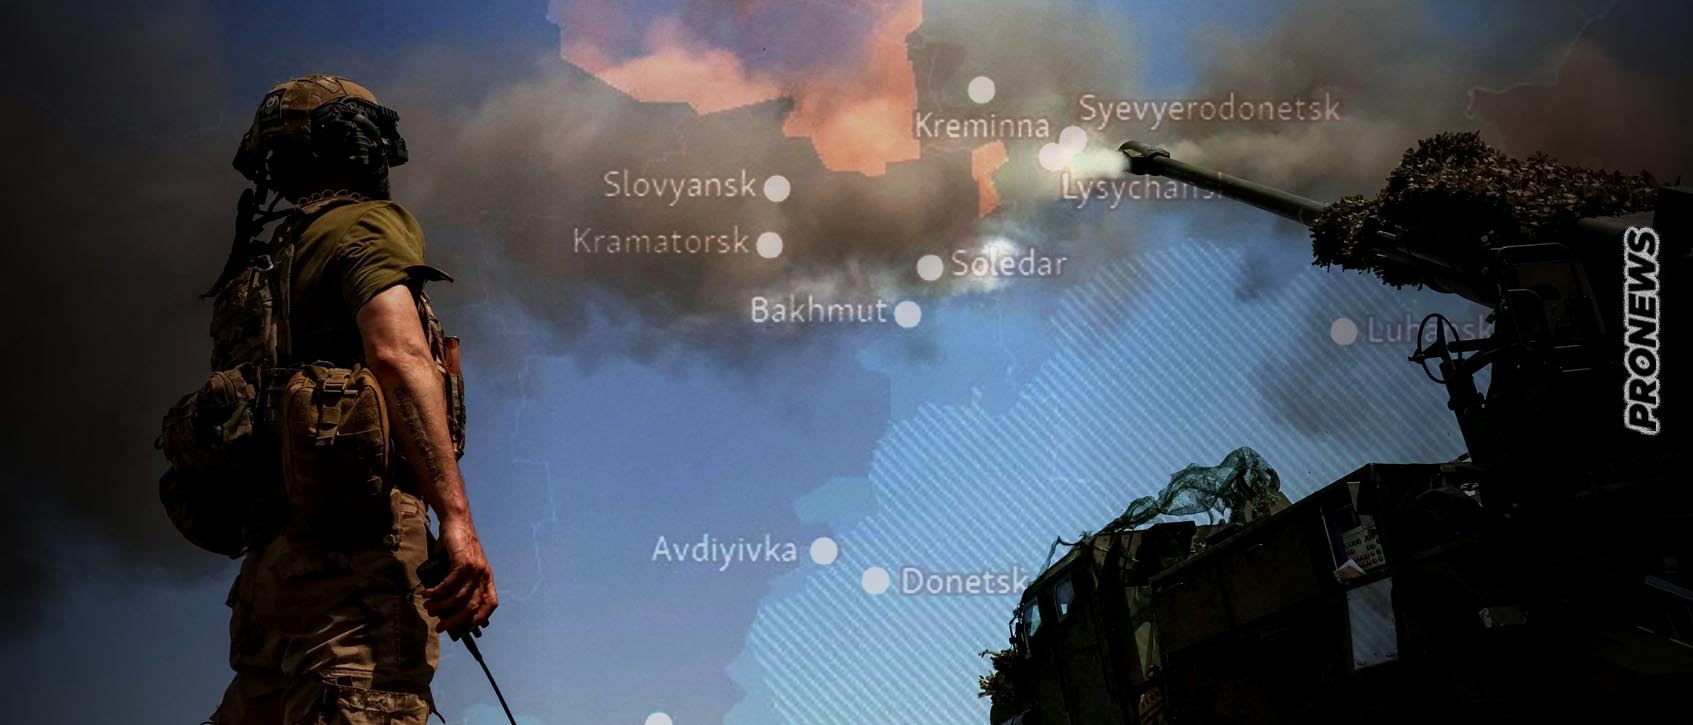 Οι Ουκρανοί ανακατέλαβαν το Σταρομαγιόρσκι στο Ντονιέτσκ – Σκληρές μάχες στο Μπακχμούτ (βίντεο)